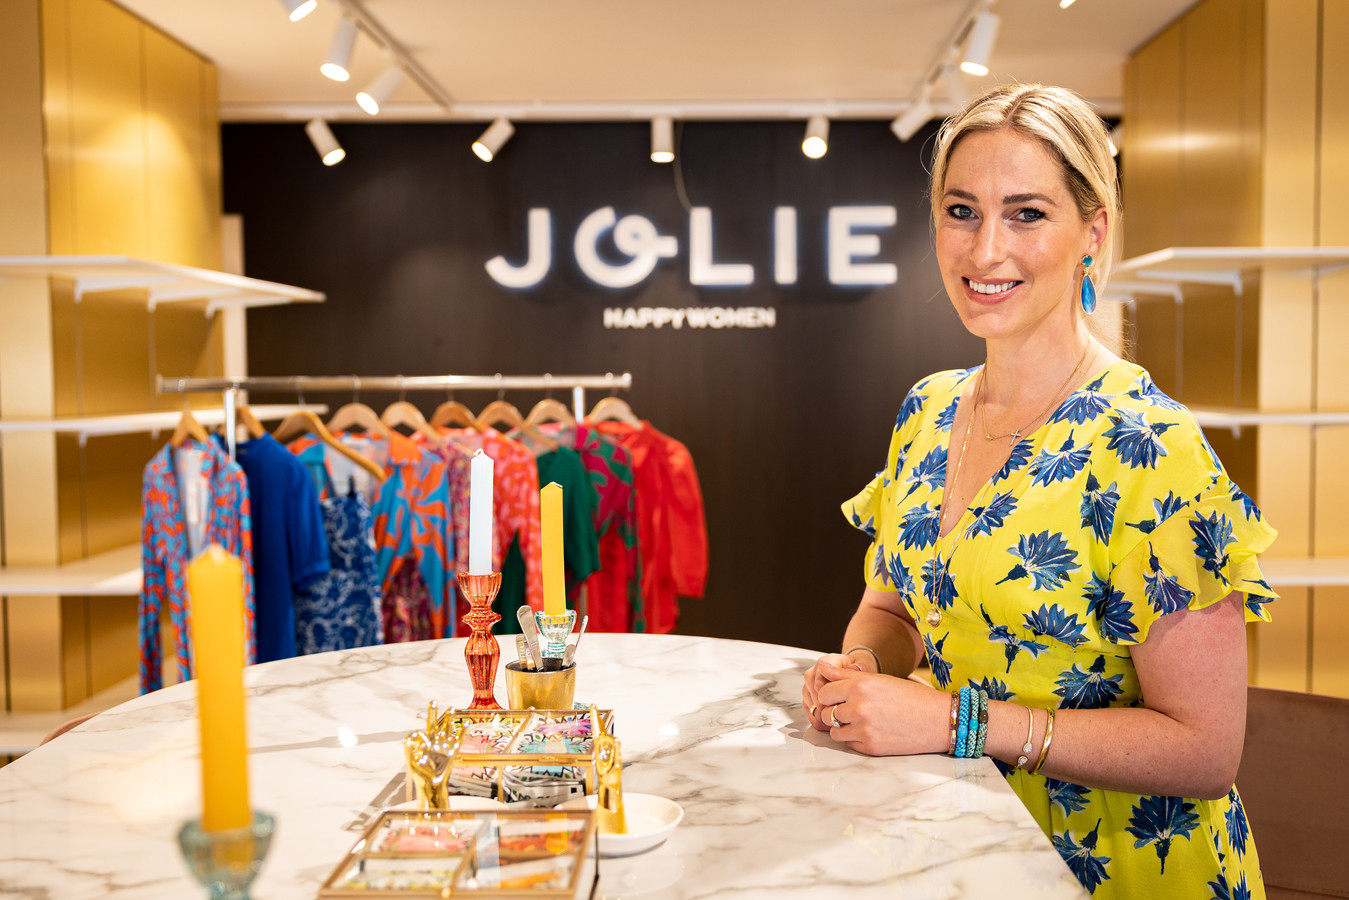 Joanne Ballast in het nieuwe pand van haar modezaak Jolie Women. Zaterdag opent ze de deuren.